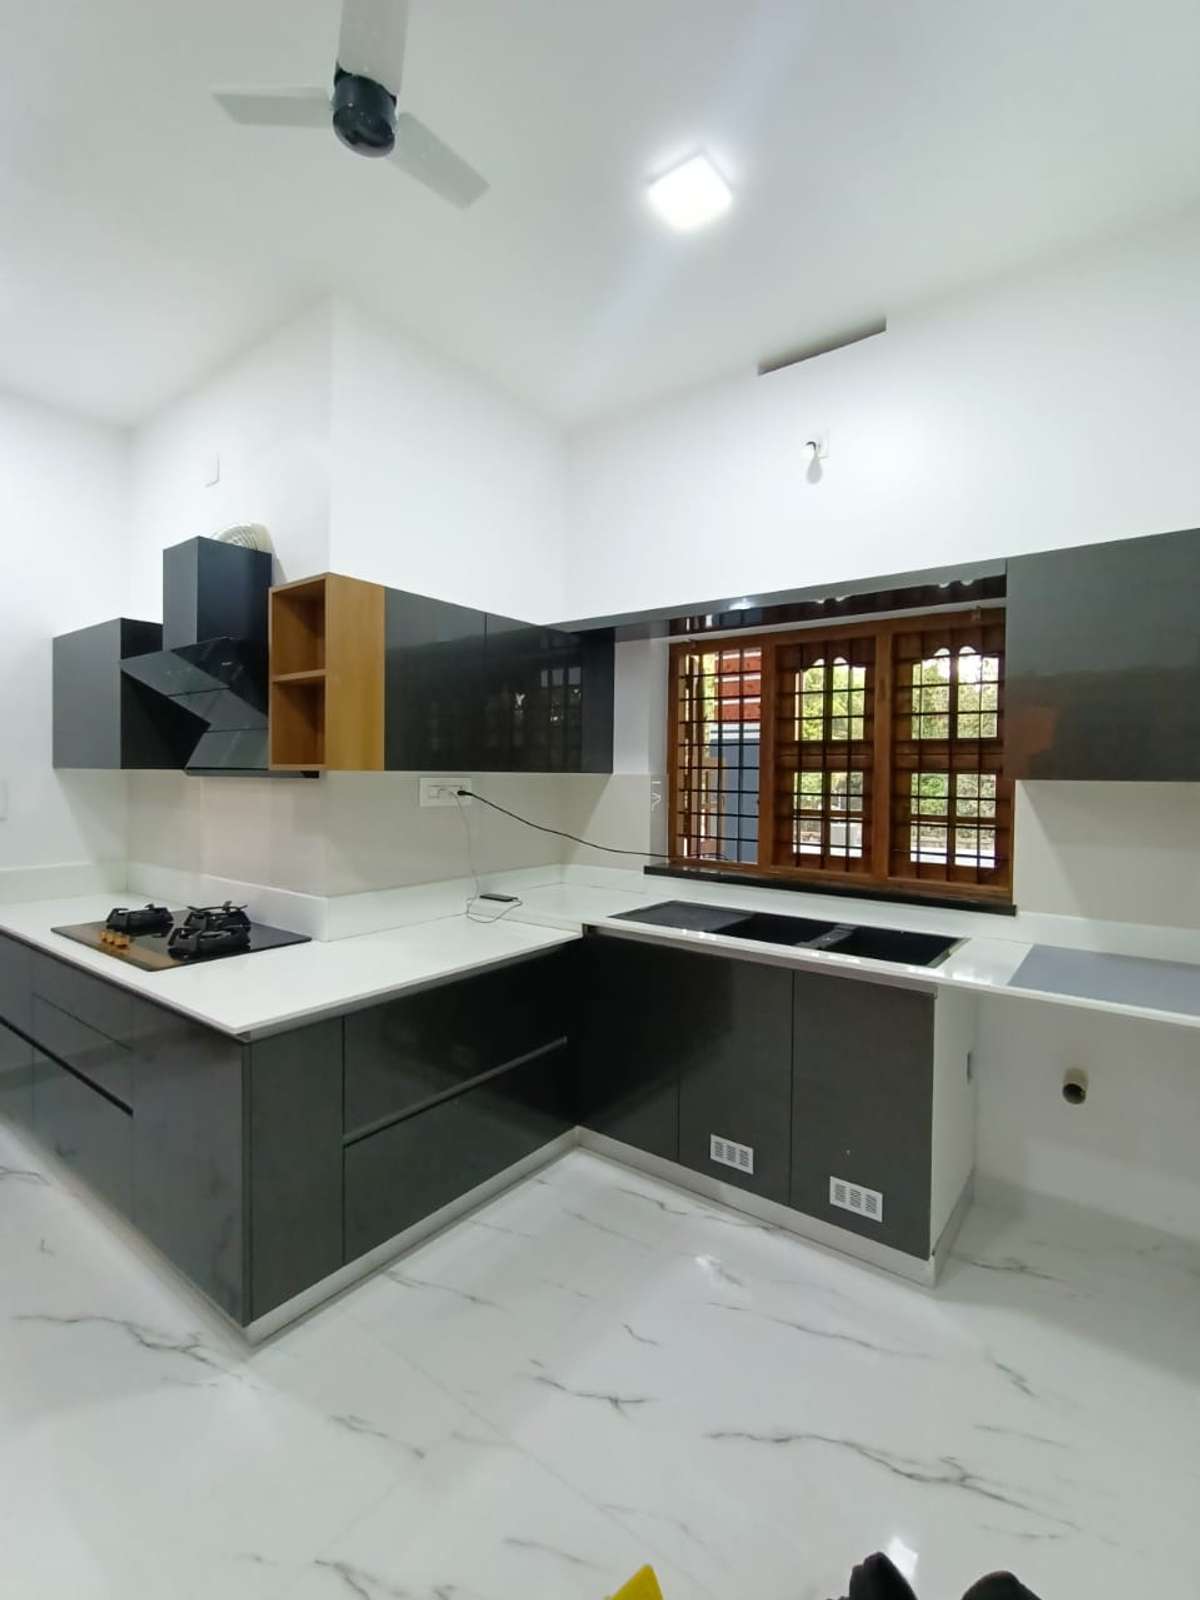 Designs by Interior Designer CABINET stories 9495011585, Thrissur | Kolo